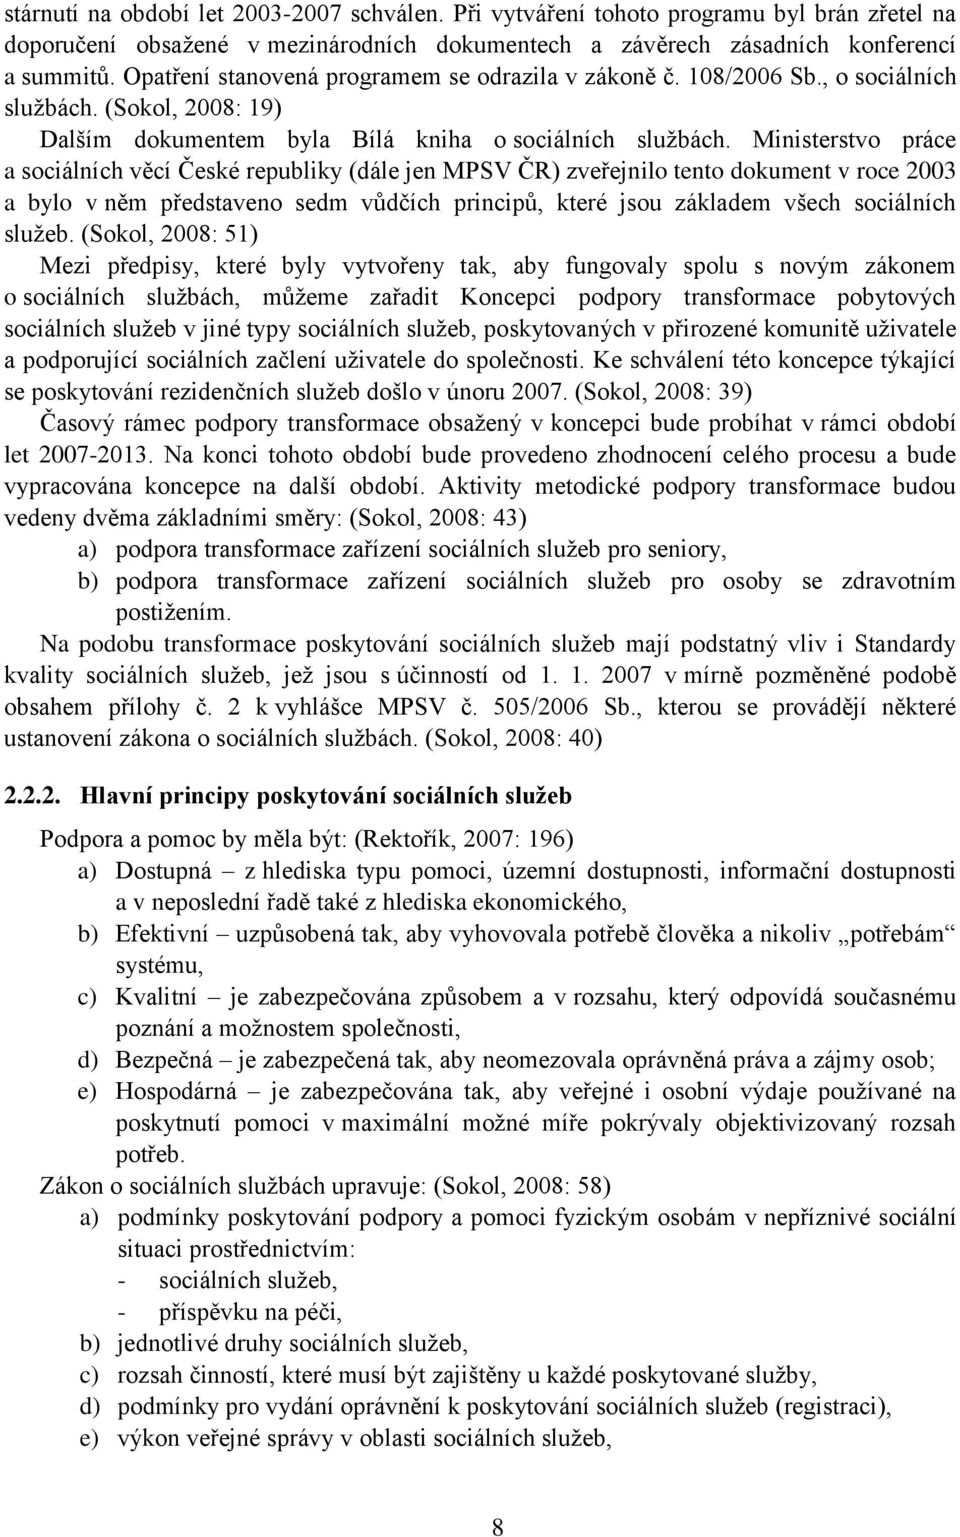 Ministerstvo práce a sociálních věcí České republiky (dále jen MPSV ČR) zveřejnilo tento dokument v roce 2003 a bylo v něm představeno sedm vůdčích principů, které jsou základem všech sociálních